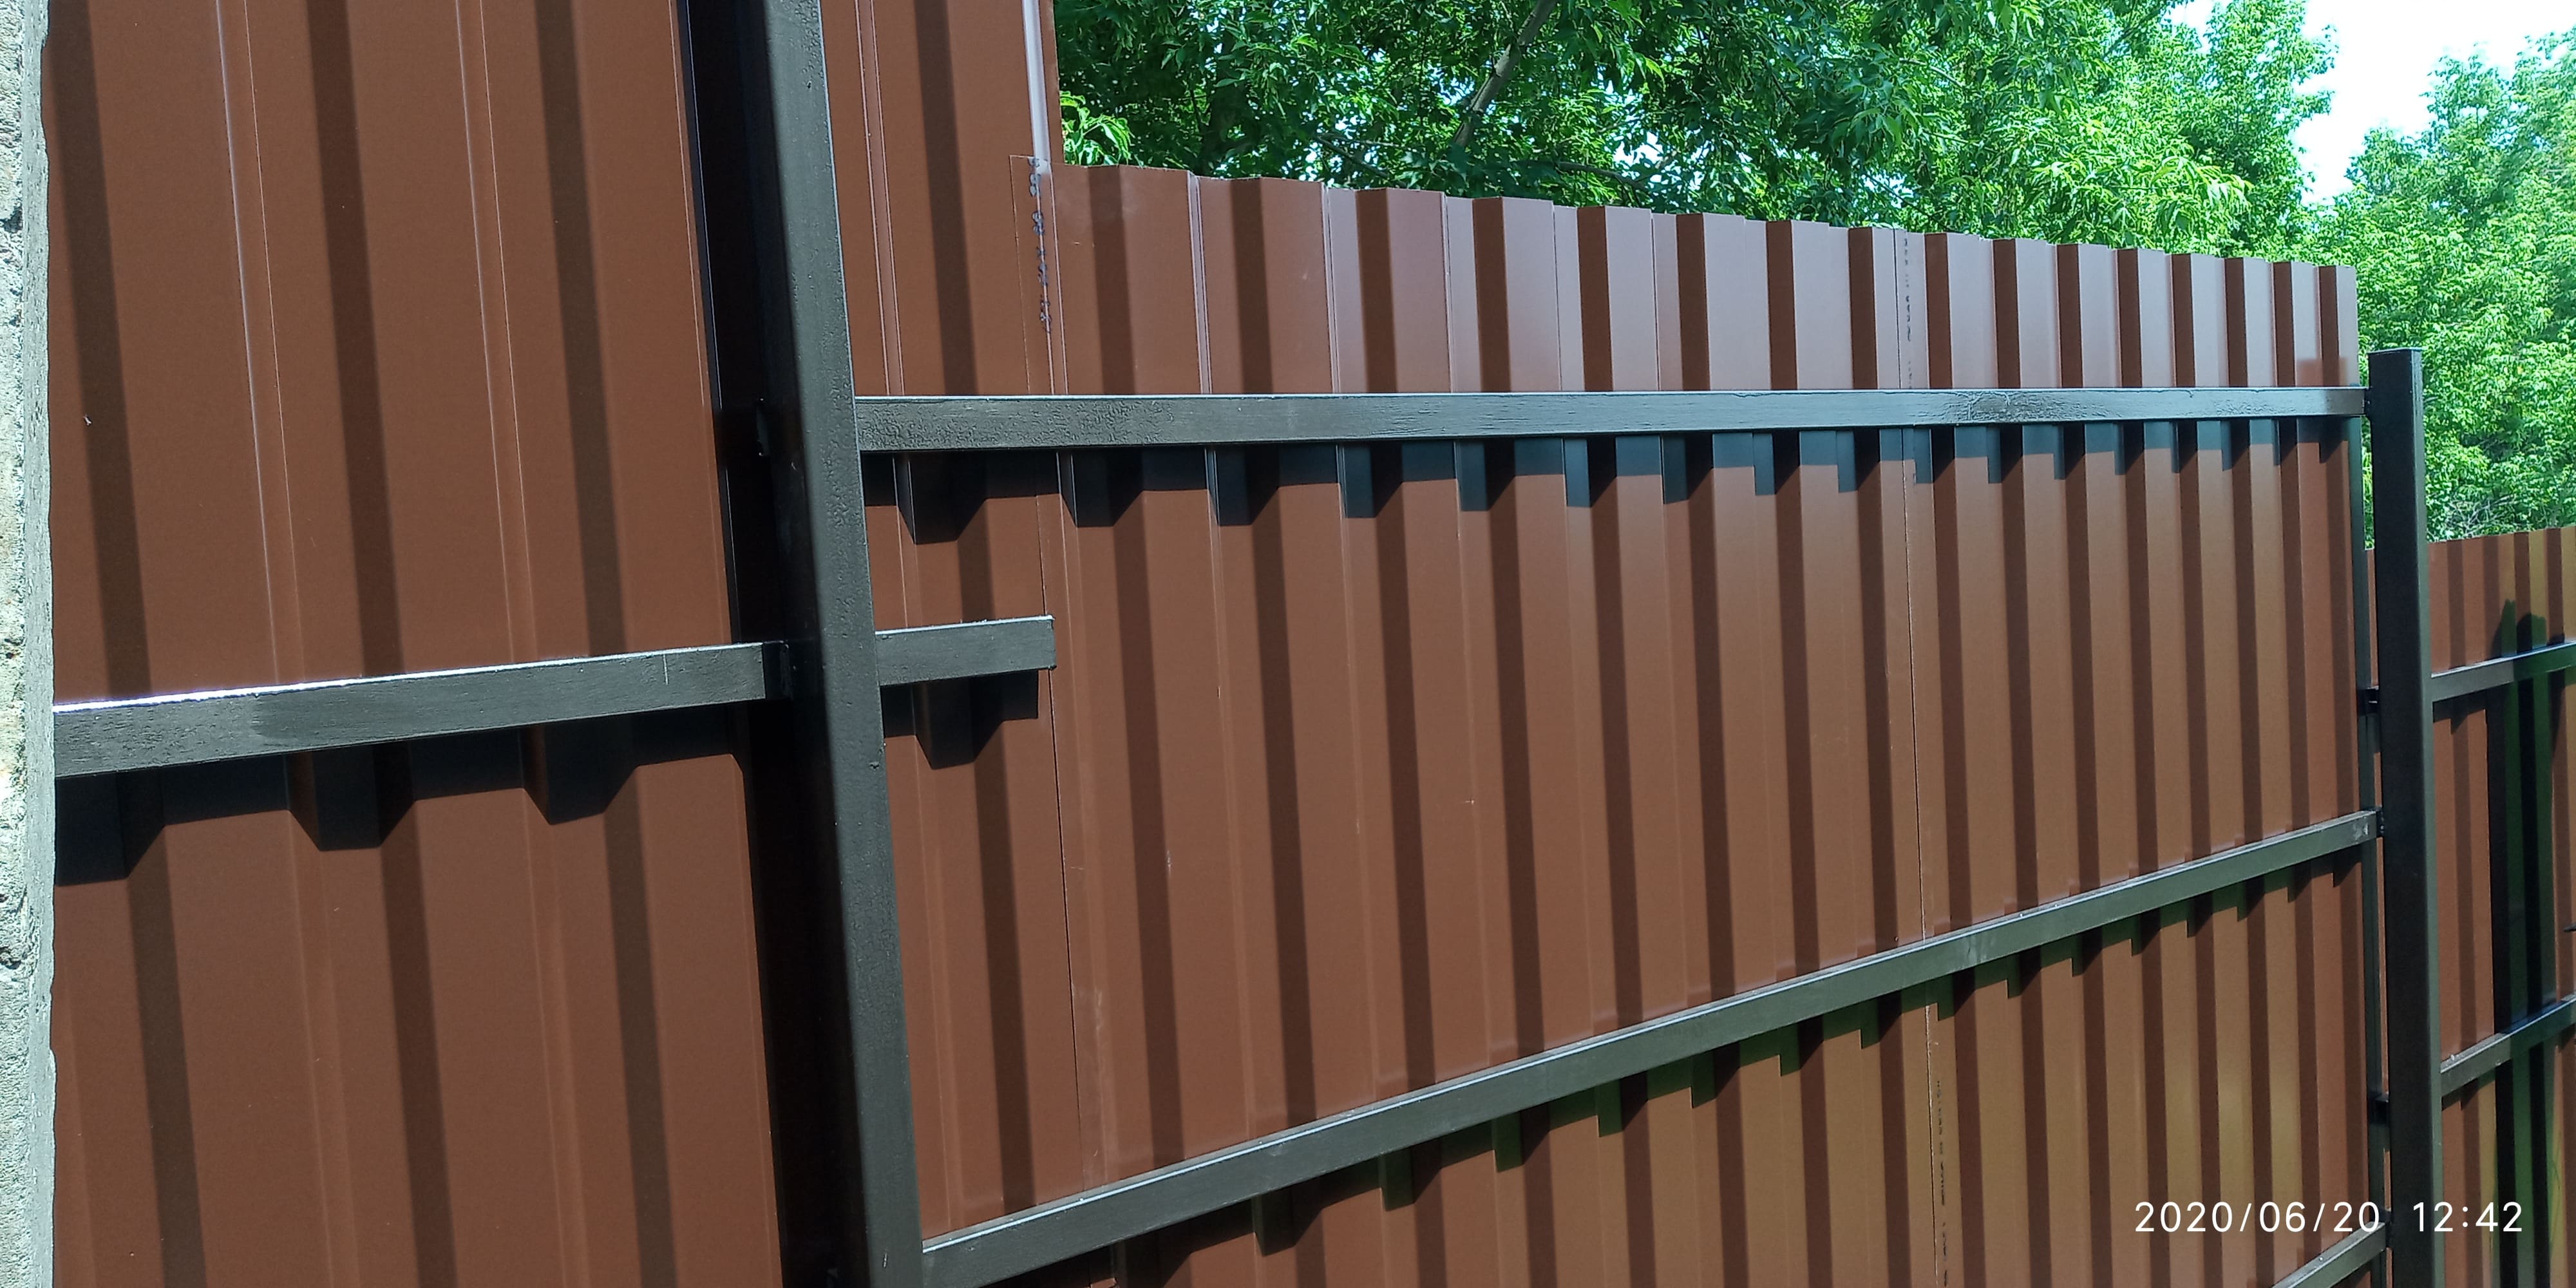 Забор из металлопрофиля (темно-коричневый) на косогоре